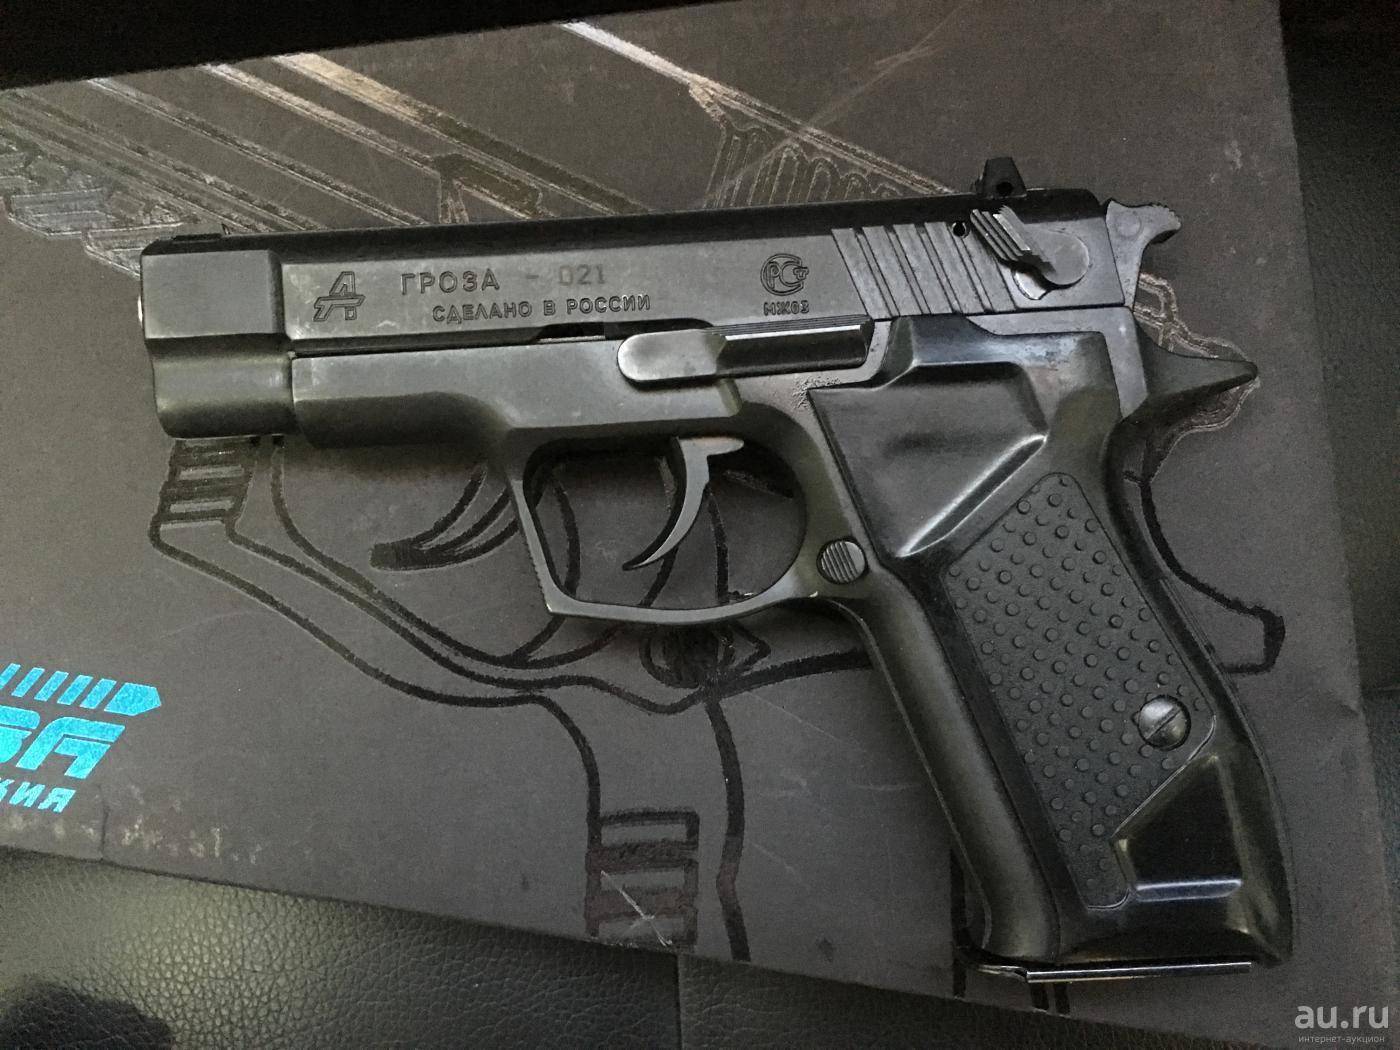 Гроза-02 травматический пистолет, обзор ствола 021 evo, разборка, тюнинг и емкость магазина, отзывы владельцев травмата